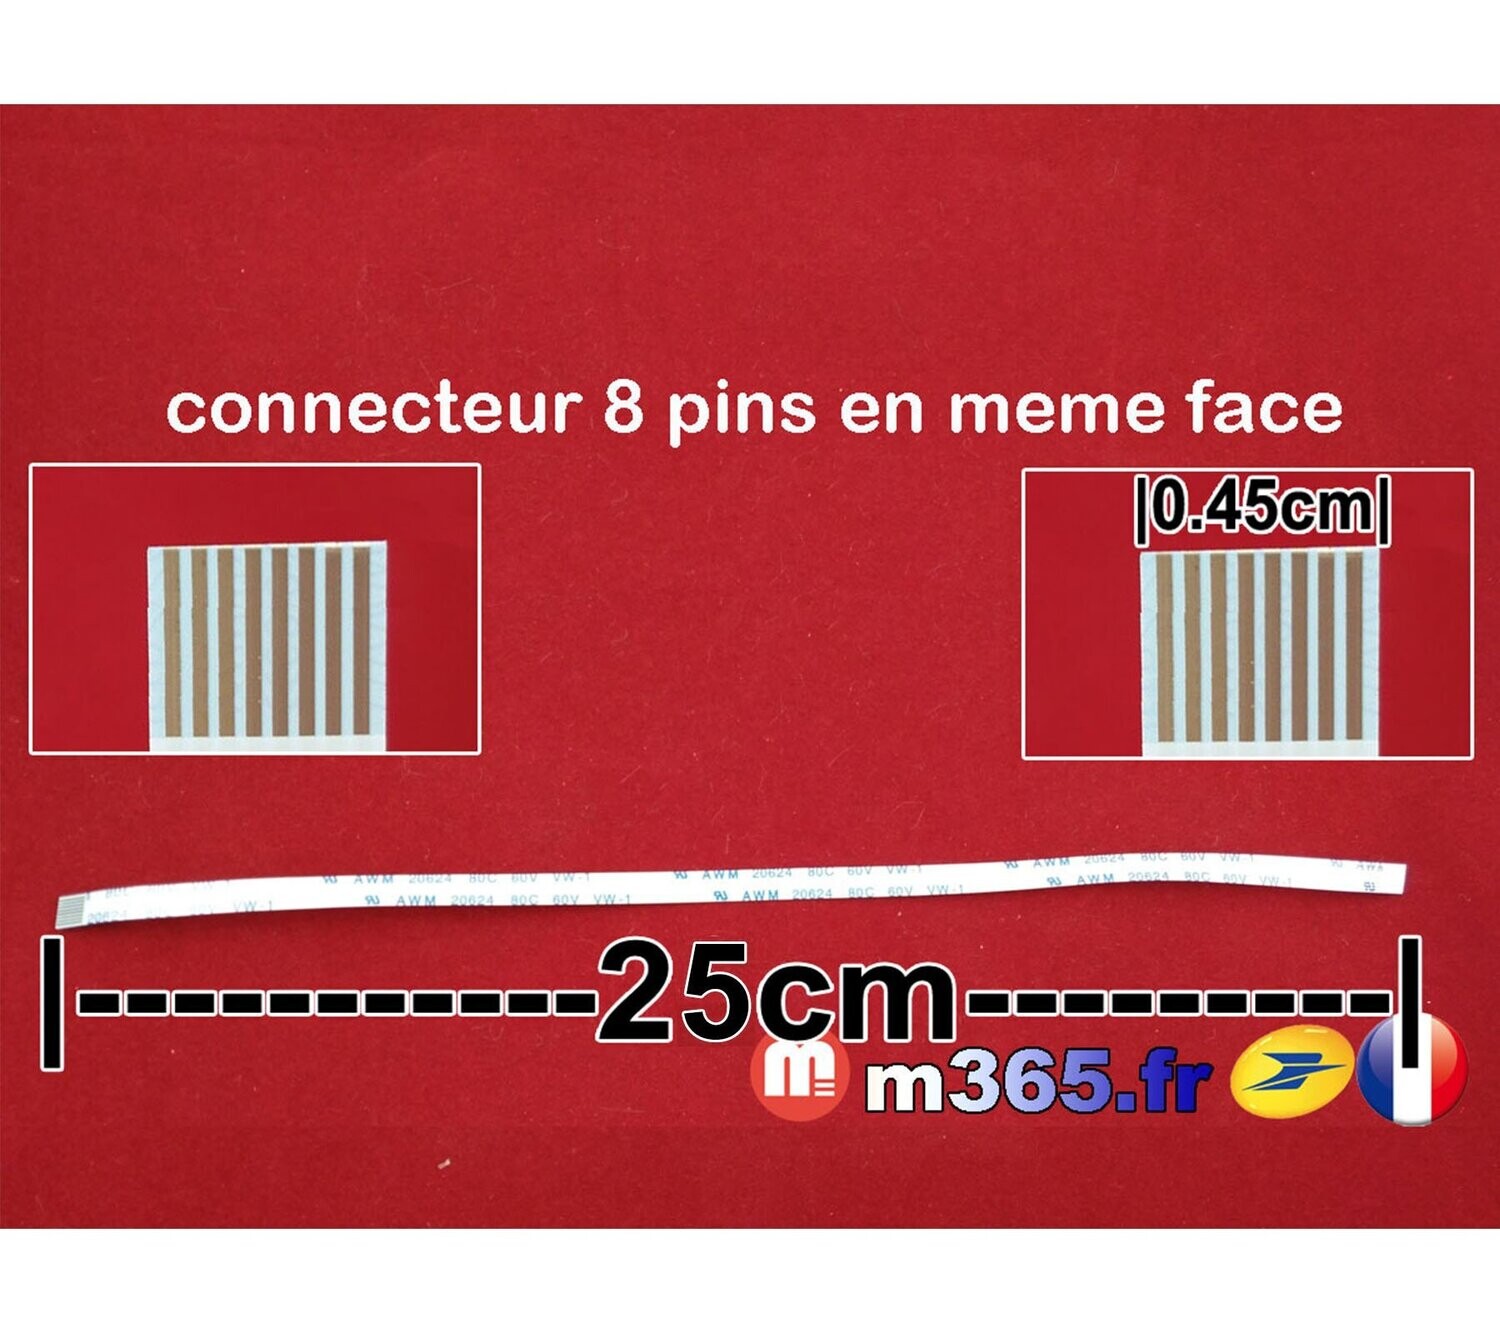 nappe 8 pins 25cm*0.45cm Connecteurs en même face